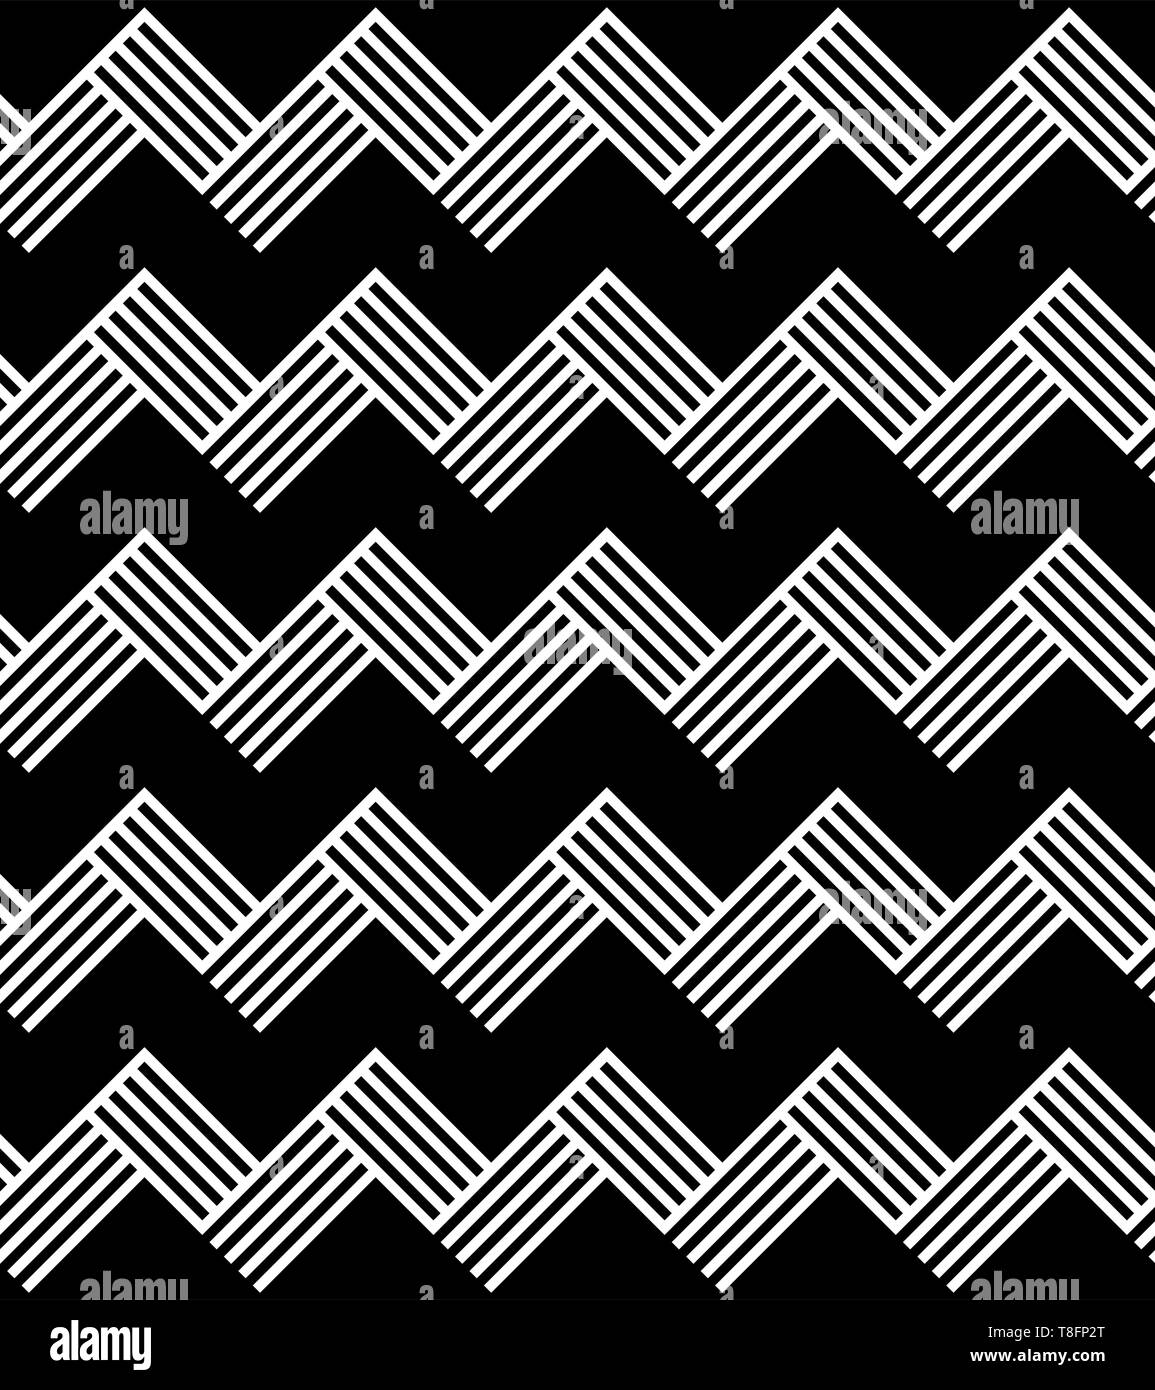 Nahtlose Muster von schwarz weiss diagonal gestreiften lineare Zöpfe. Geometrische gestreifte ornament Hintergrund. Drucken Karte, Tuch, Bekleidung, Hemden, Socken, Sho Stock Vektor